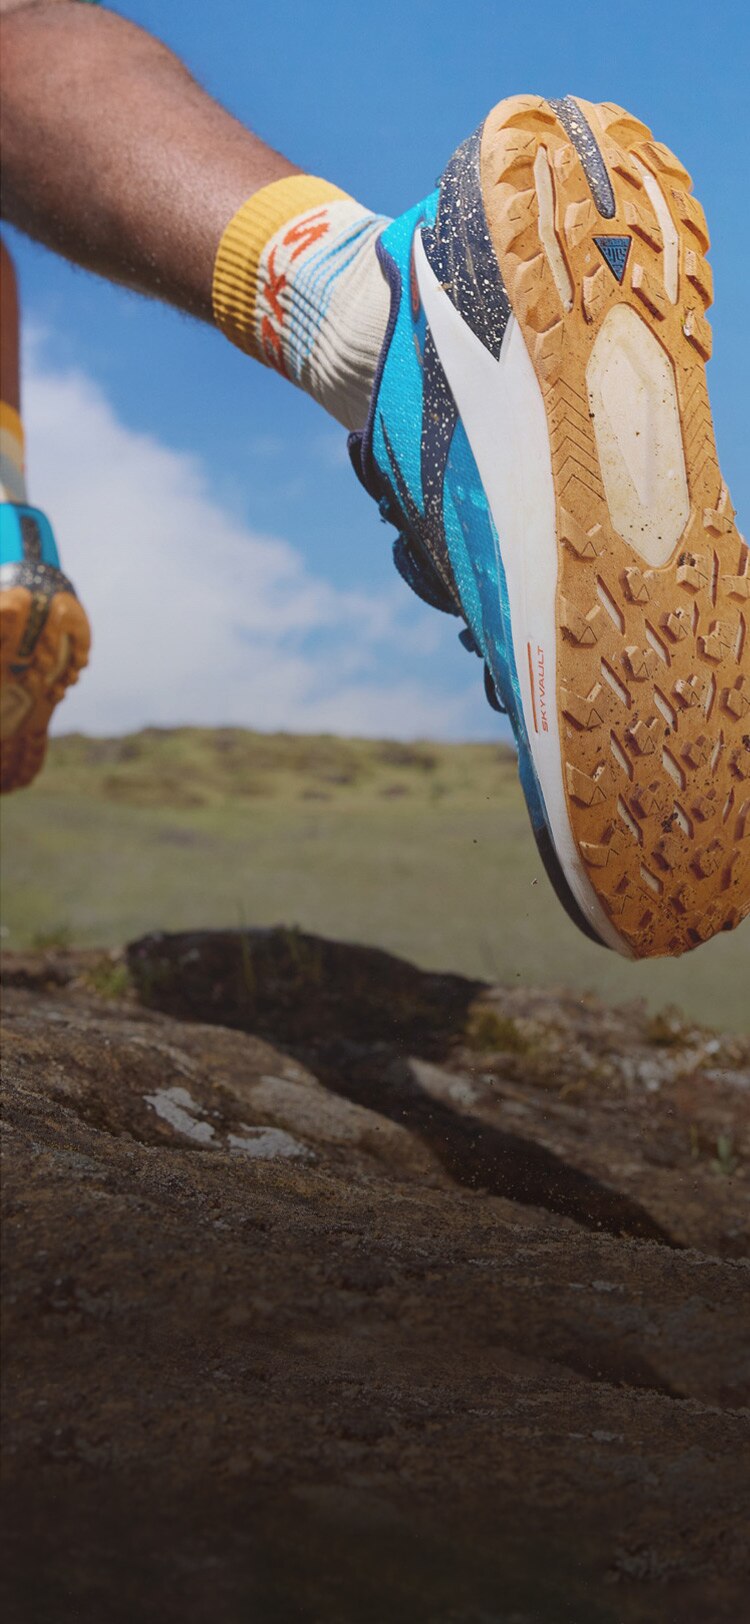 La distancia y el ajuste, decisivos al comprar zapatillas de trail